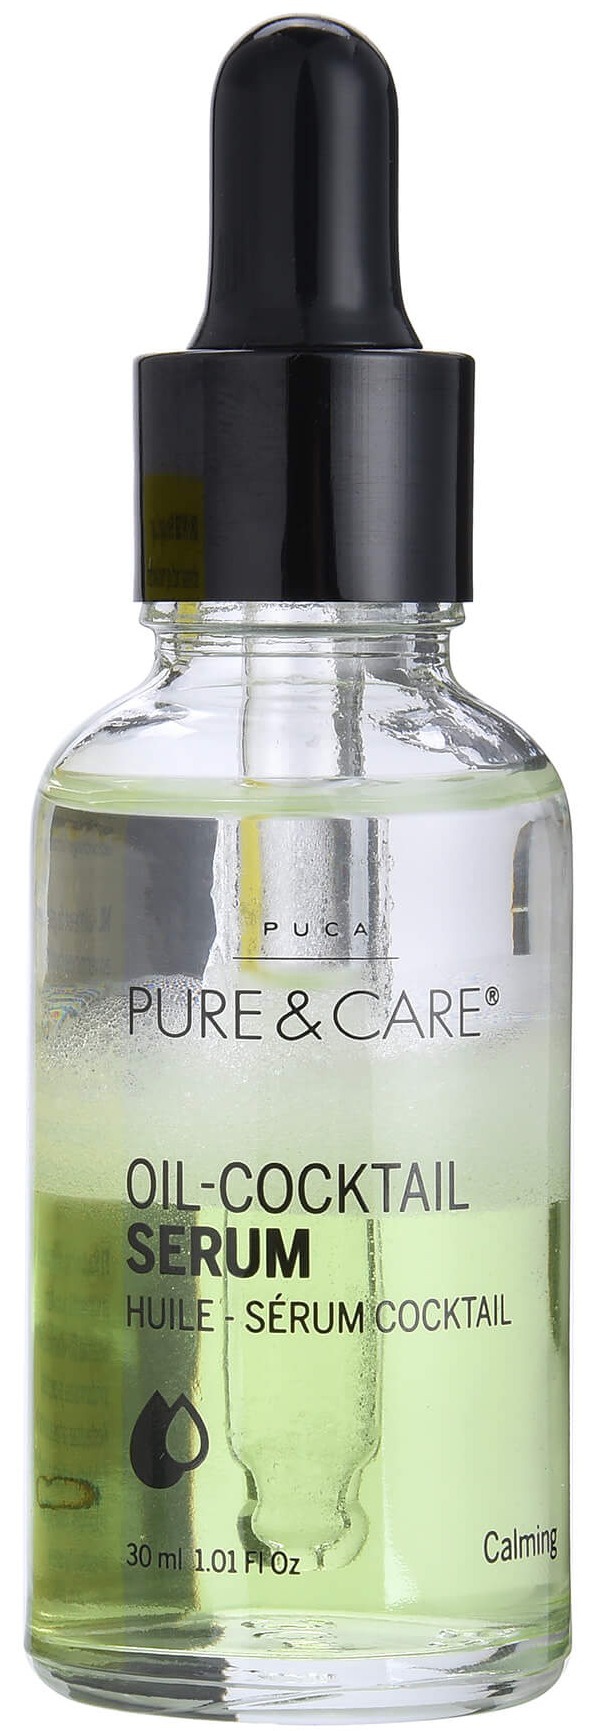 Puca Pure & Care Serum Oil Cocktail Calming